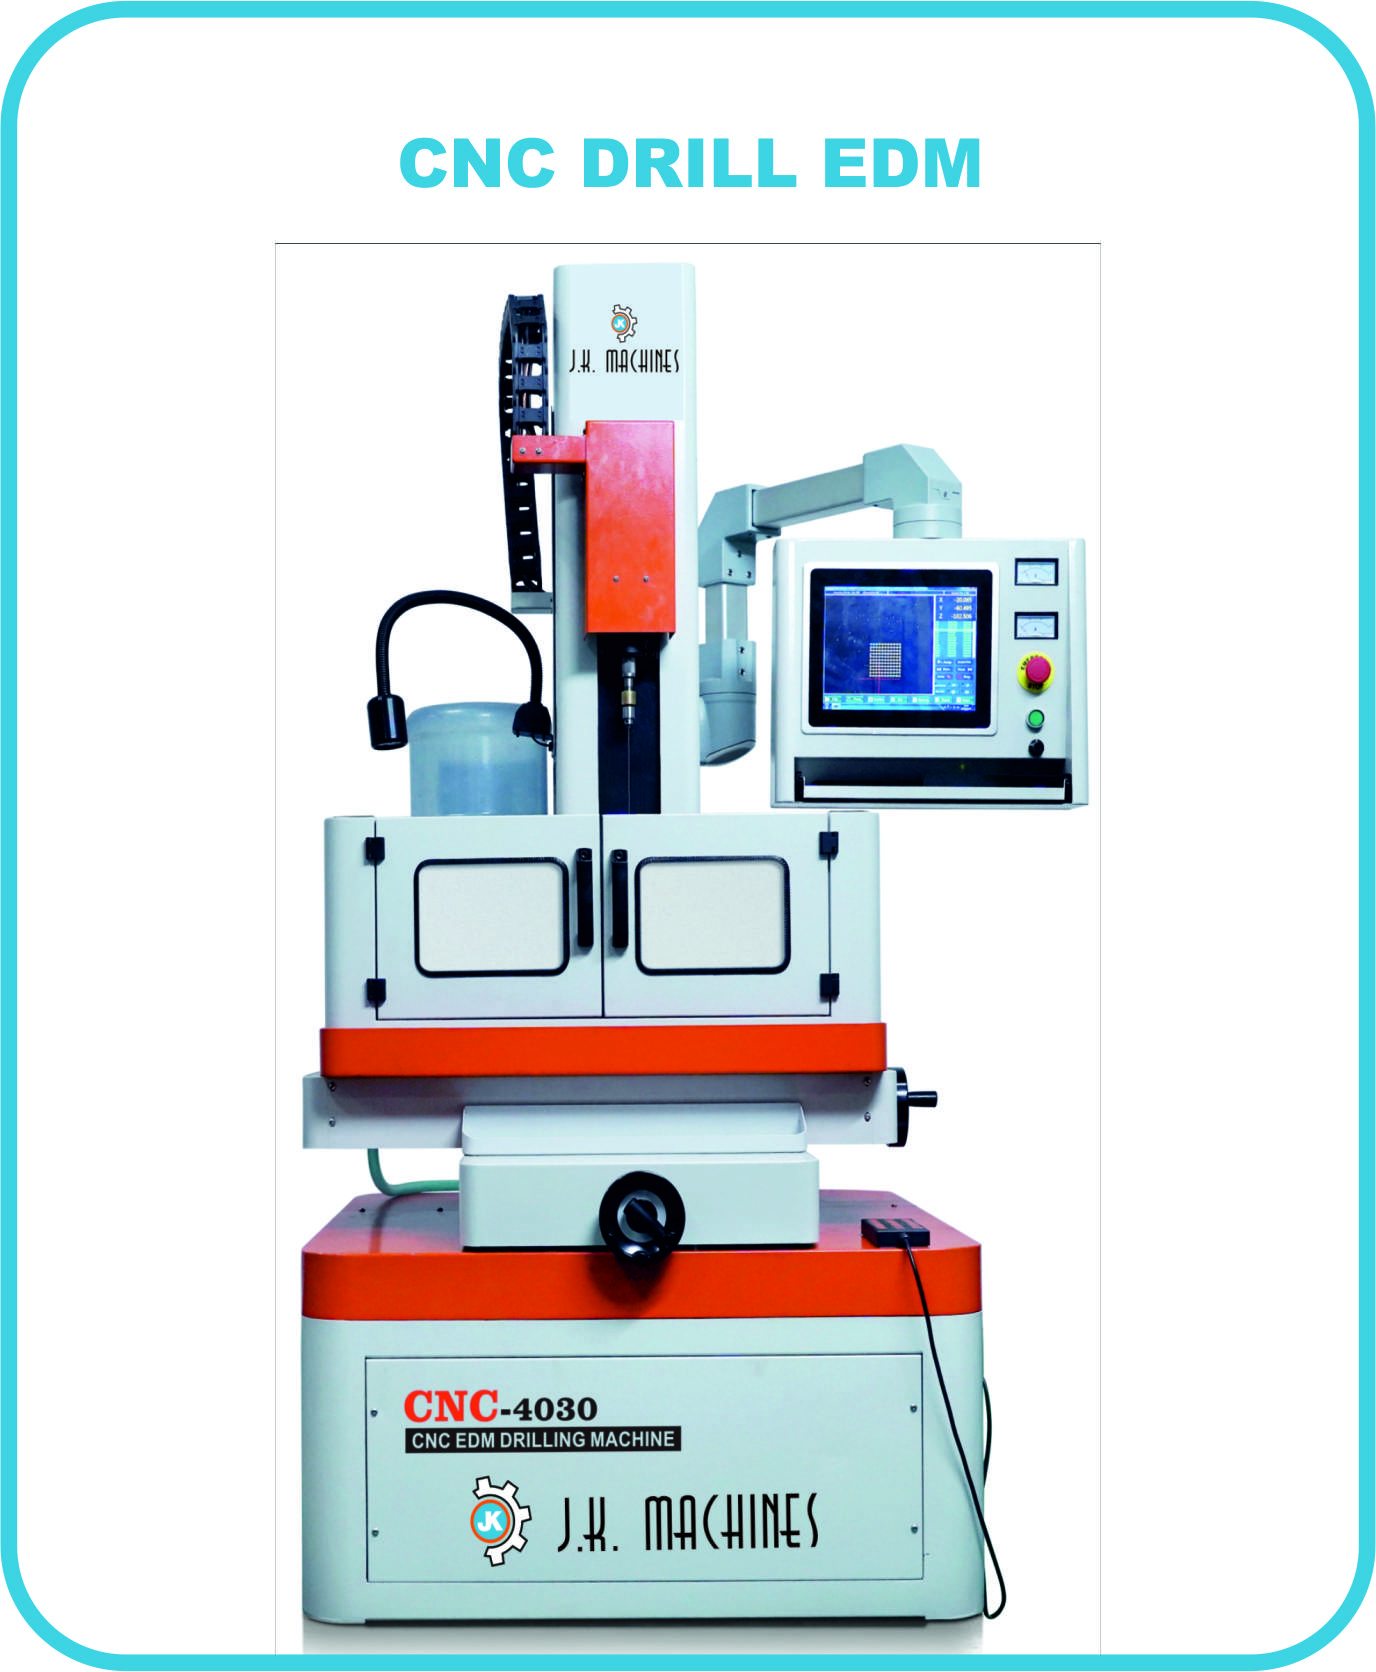 CNC DRILL EDM